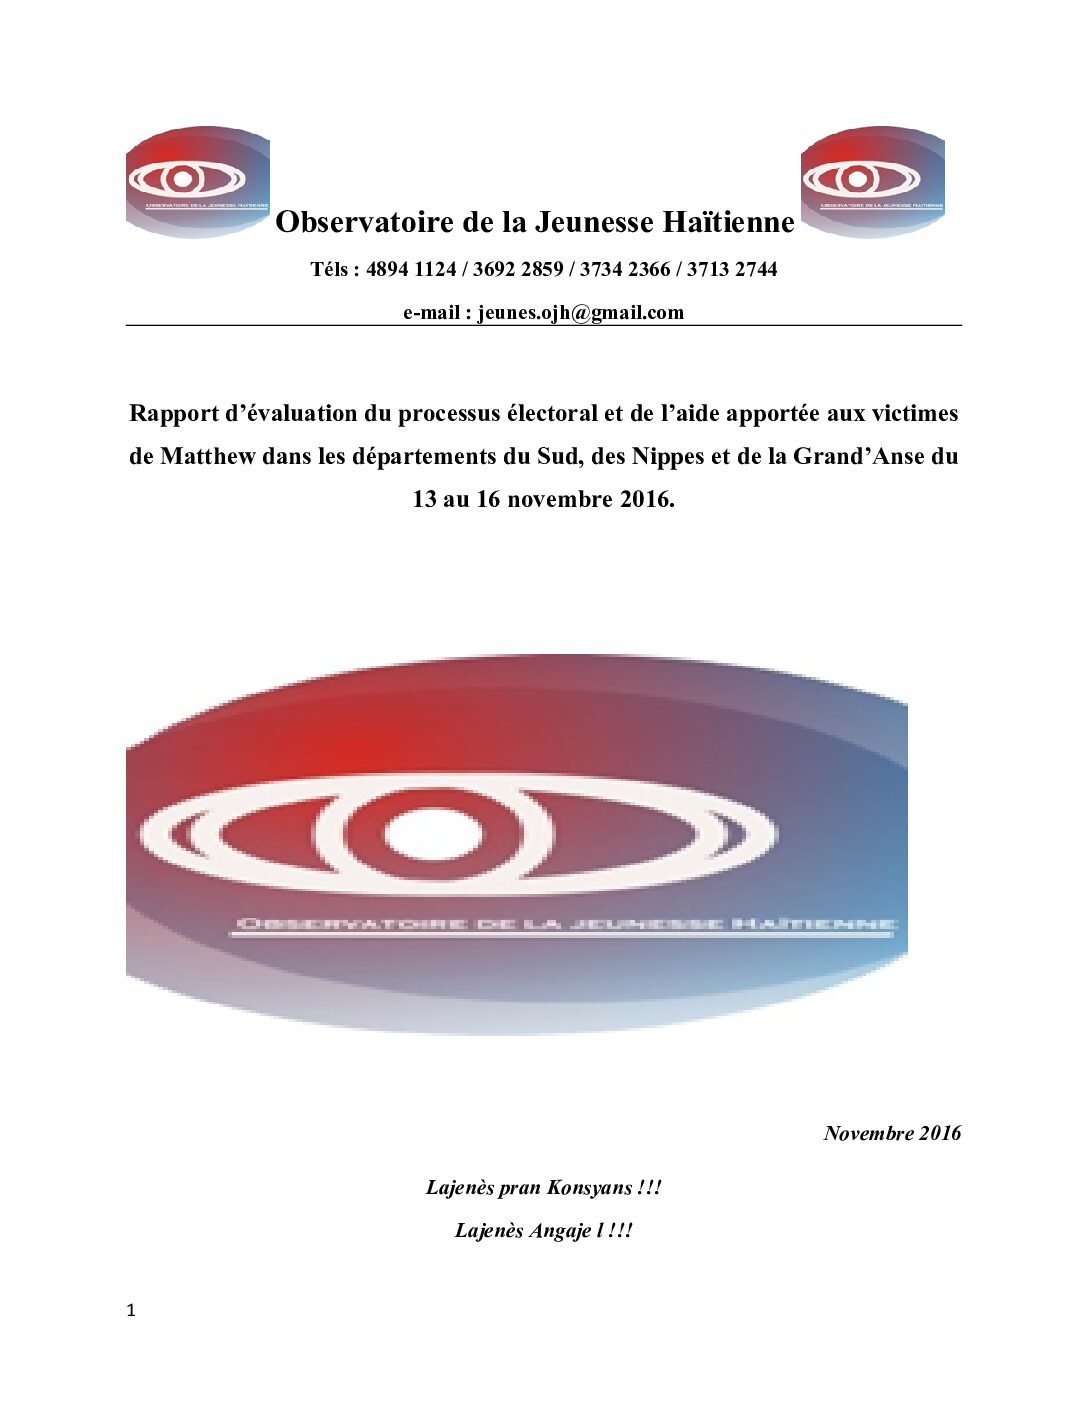 Rapport de la Mission d'évaluation de l'Observatoire de la Jeunesse Haïtienne.docx